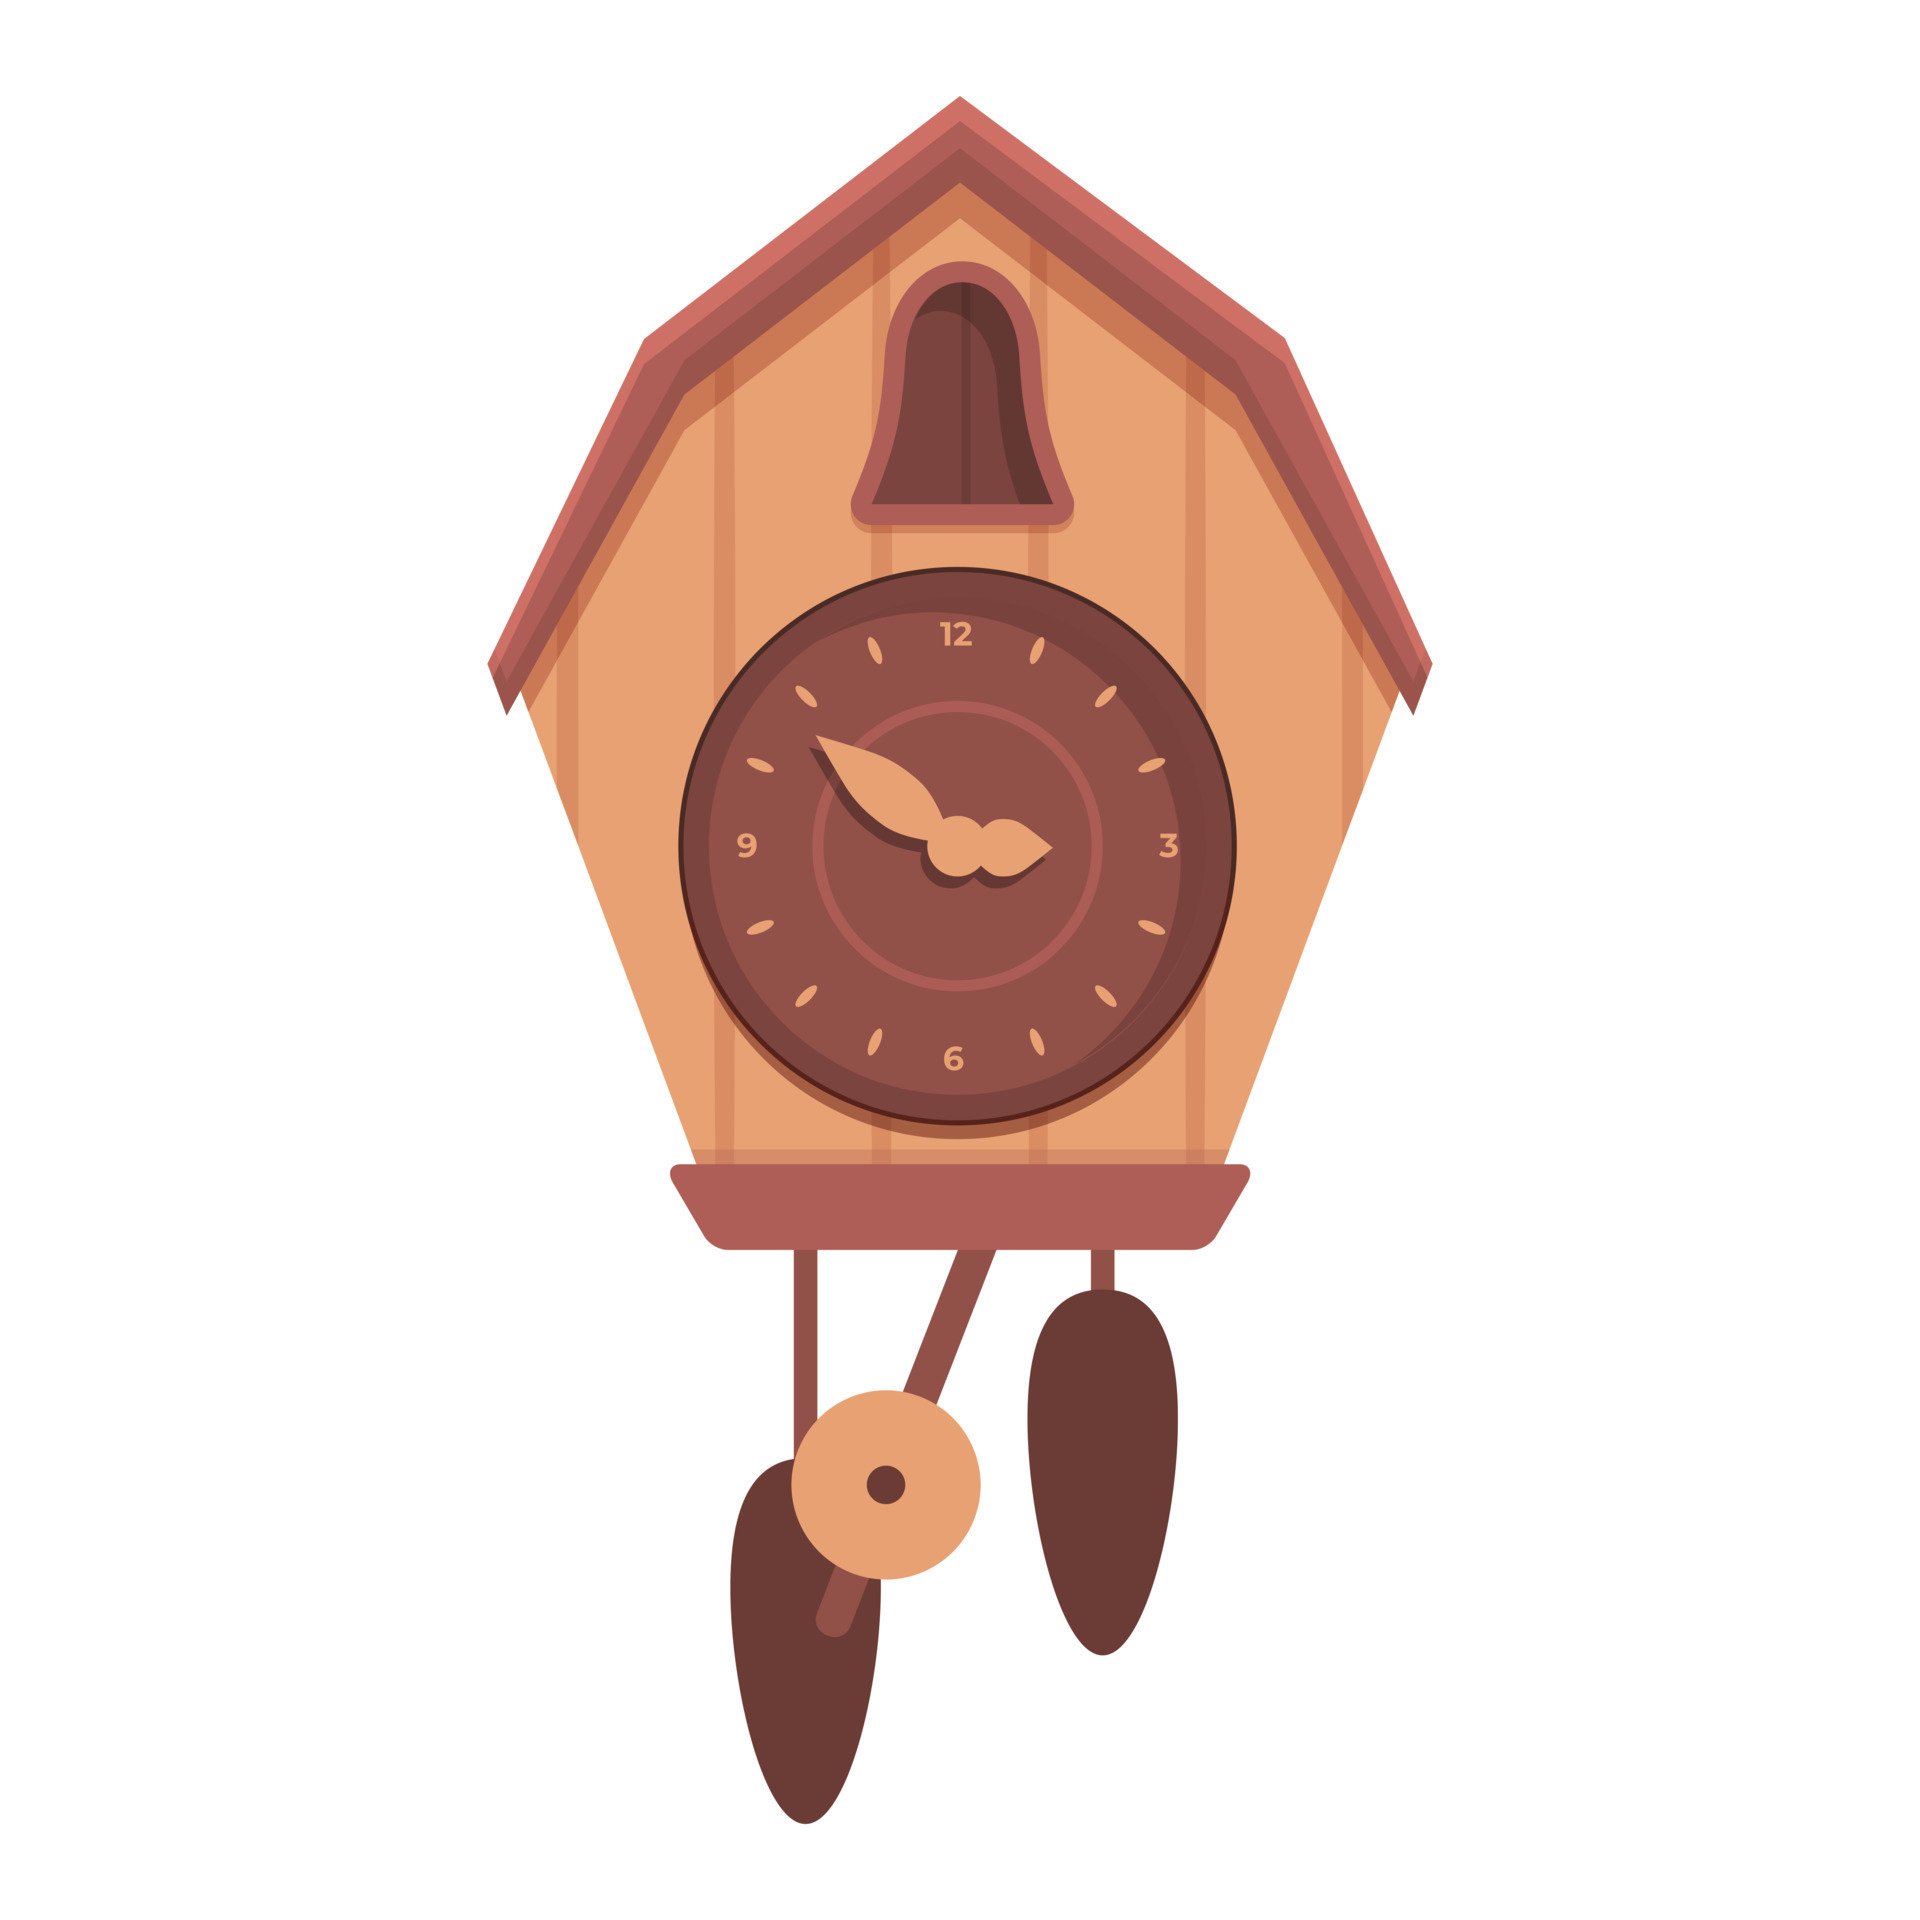 Grandfather Cuckoo Clock icon cartoon vector. Wall time 14293079 Vector Art  at Vecteezy